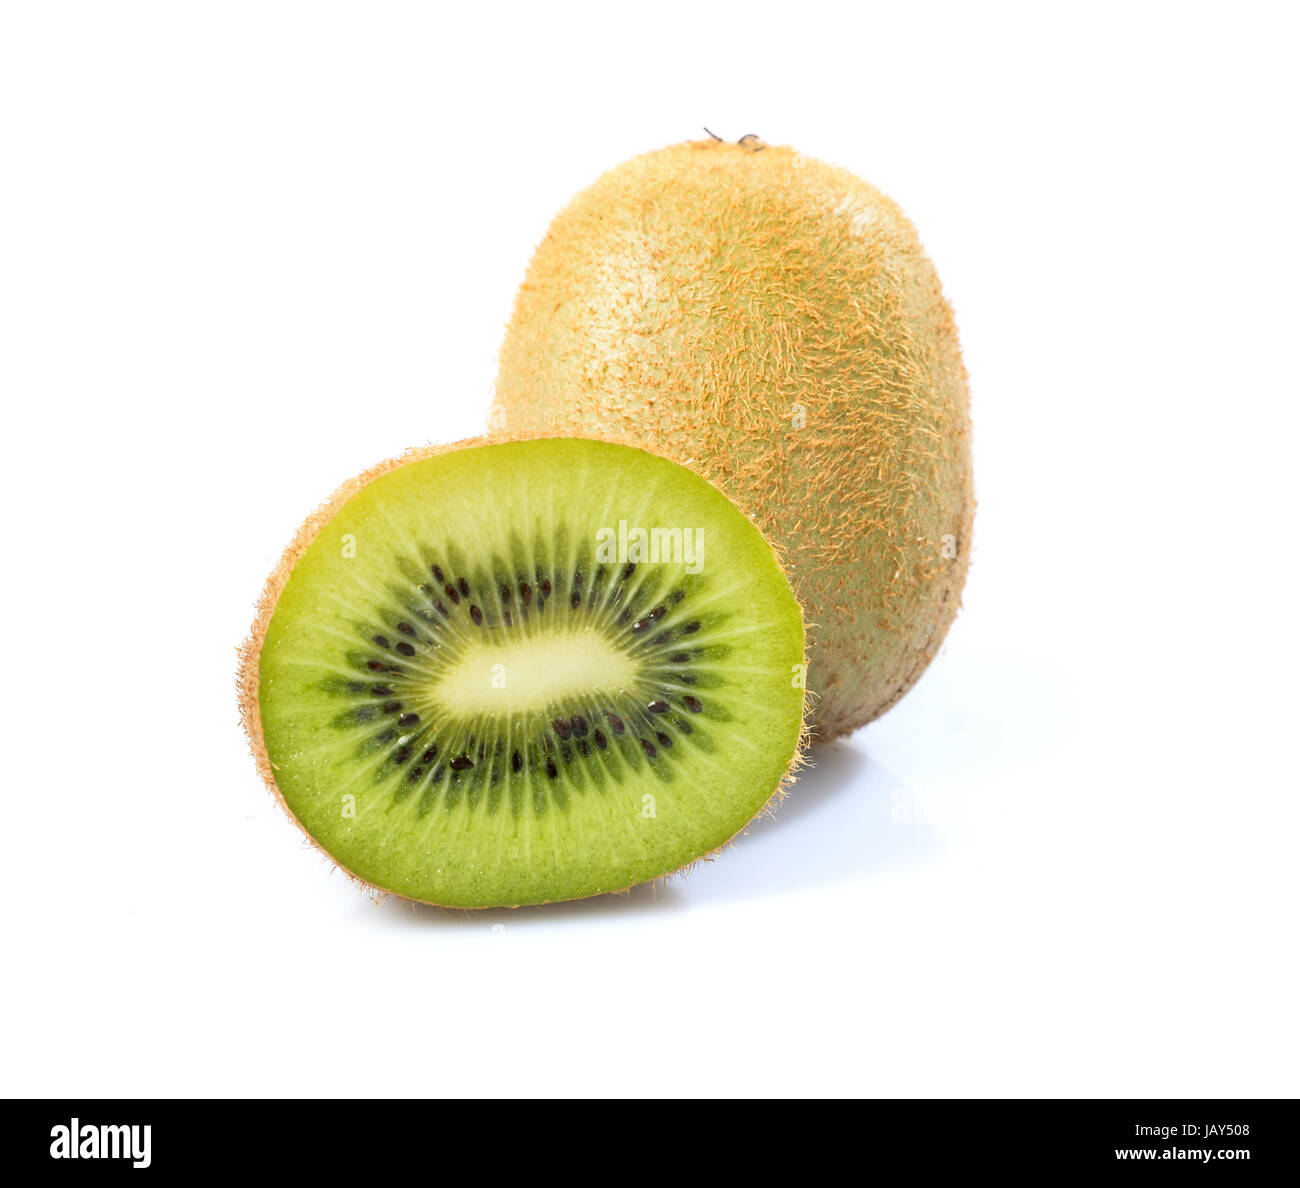 ripe kiwi isolated on a white background Stock Photo